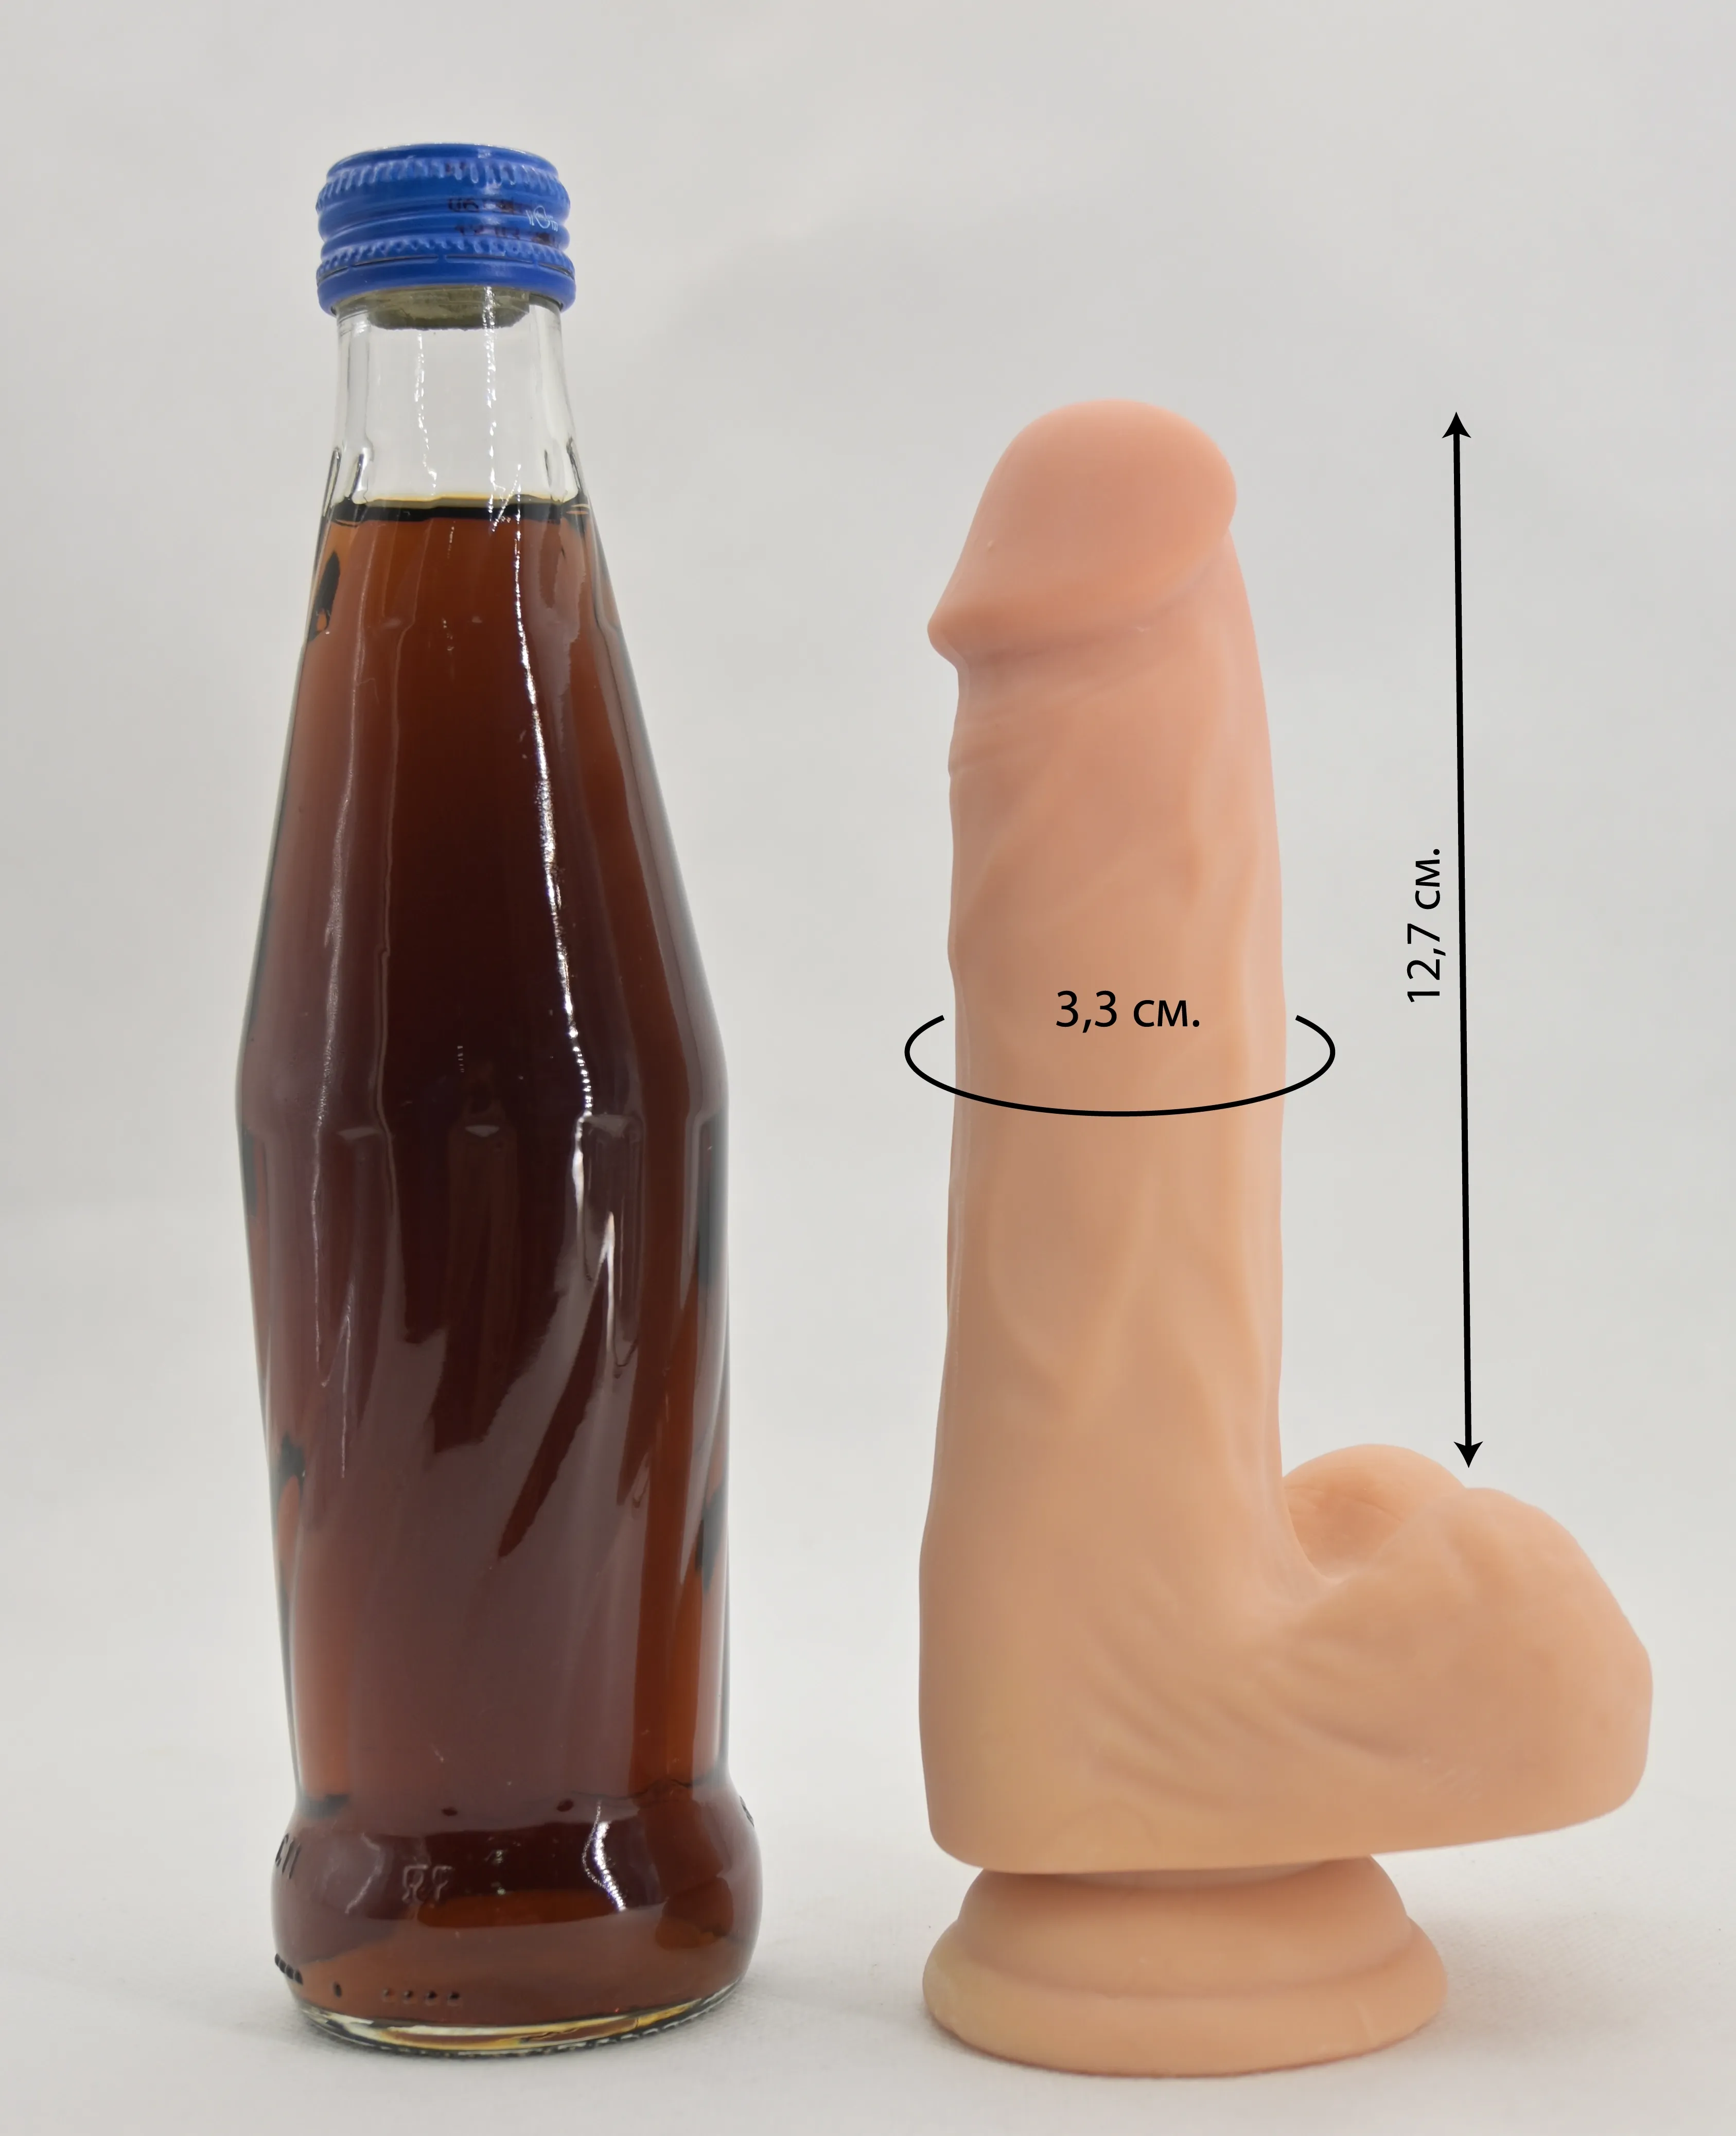 Размеры и сравнение фаллоса с бутылкой 0,33